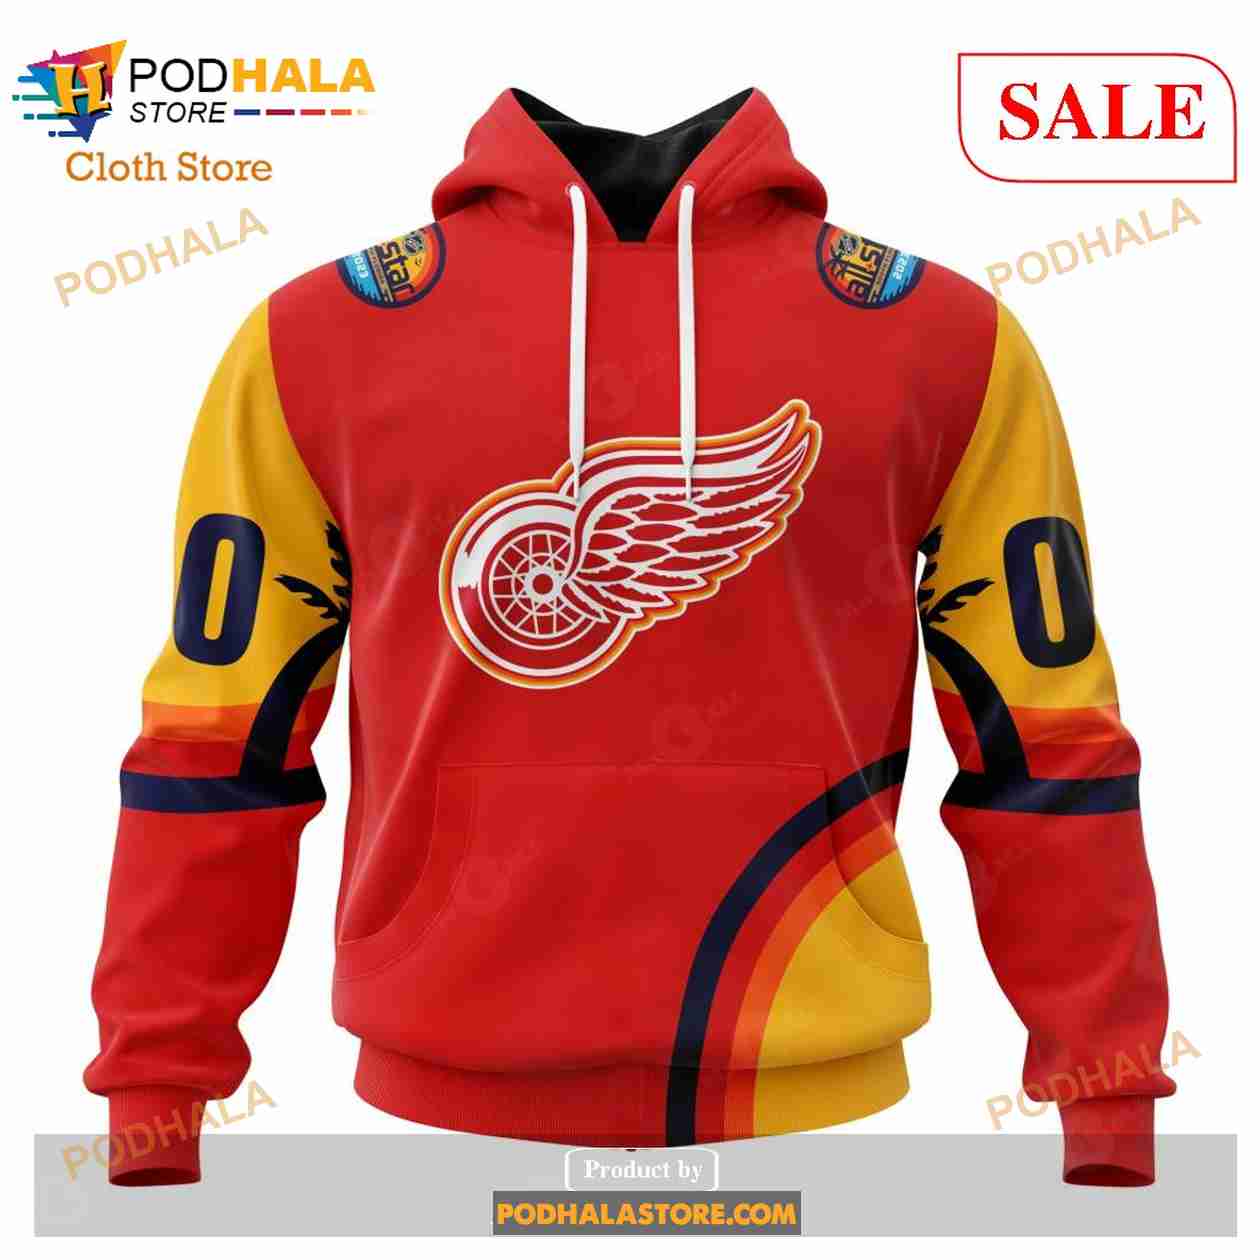 Custom Detroit Red Wings ALL Star Sunset Sweatshirt NHL Hoodie 3D